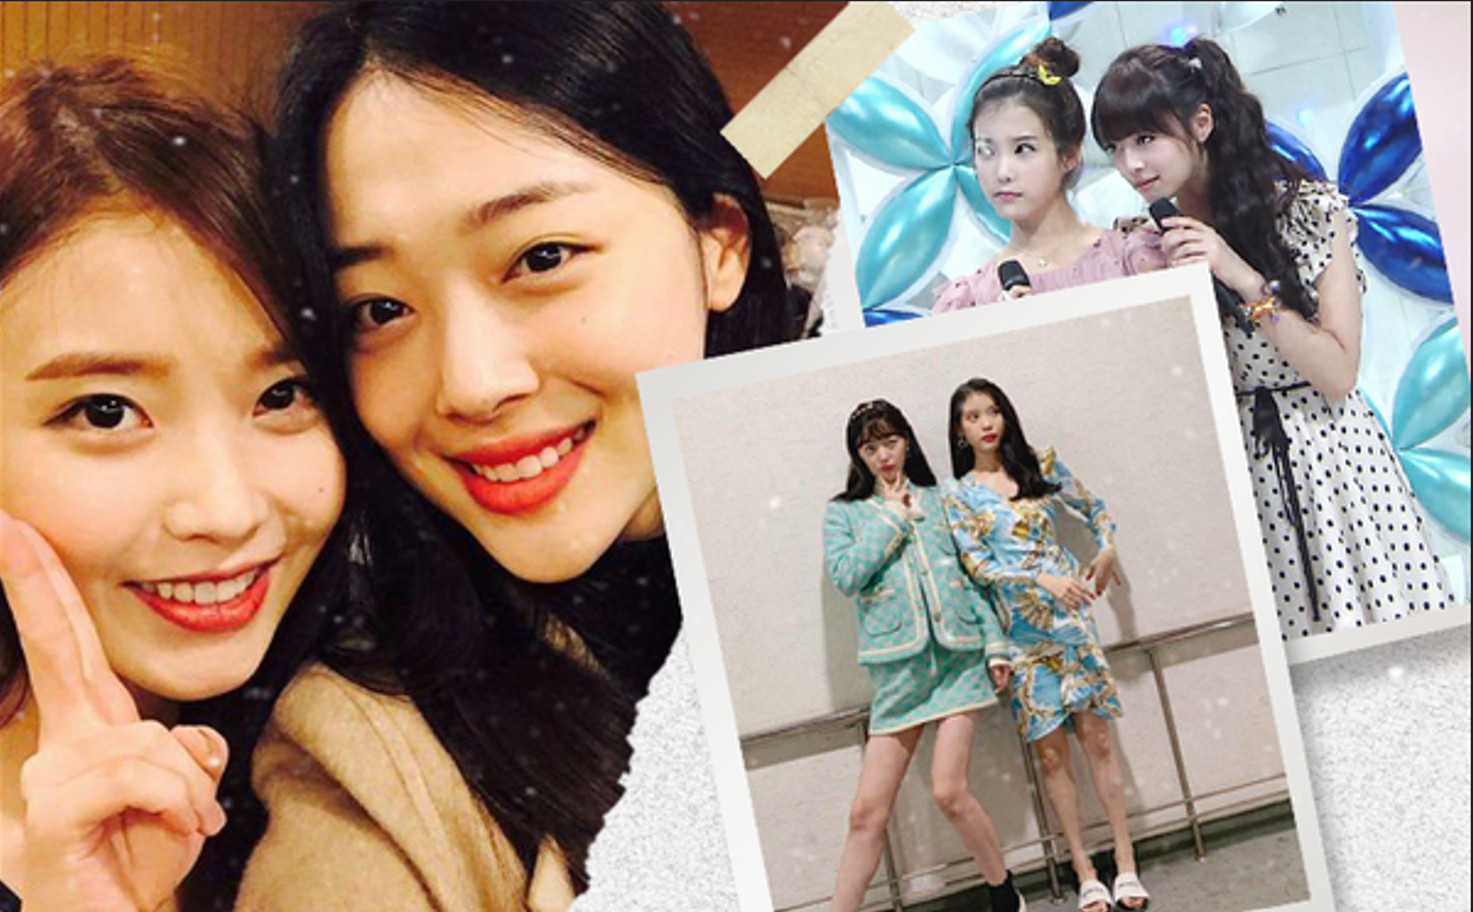 IU đối mặt với sự ra đi của người bạn thân thiết - Sulli, năm đó netizen Hàn đã chê trách nữ idol không ngớt